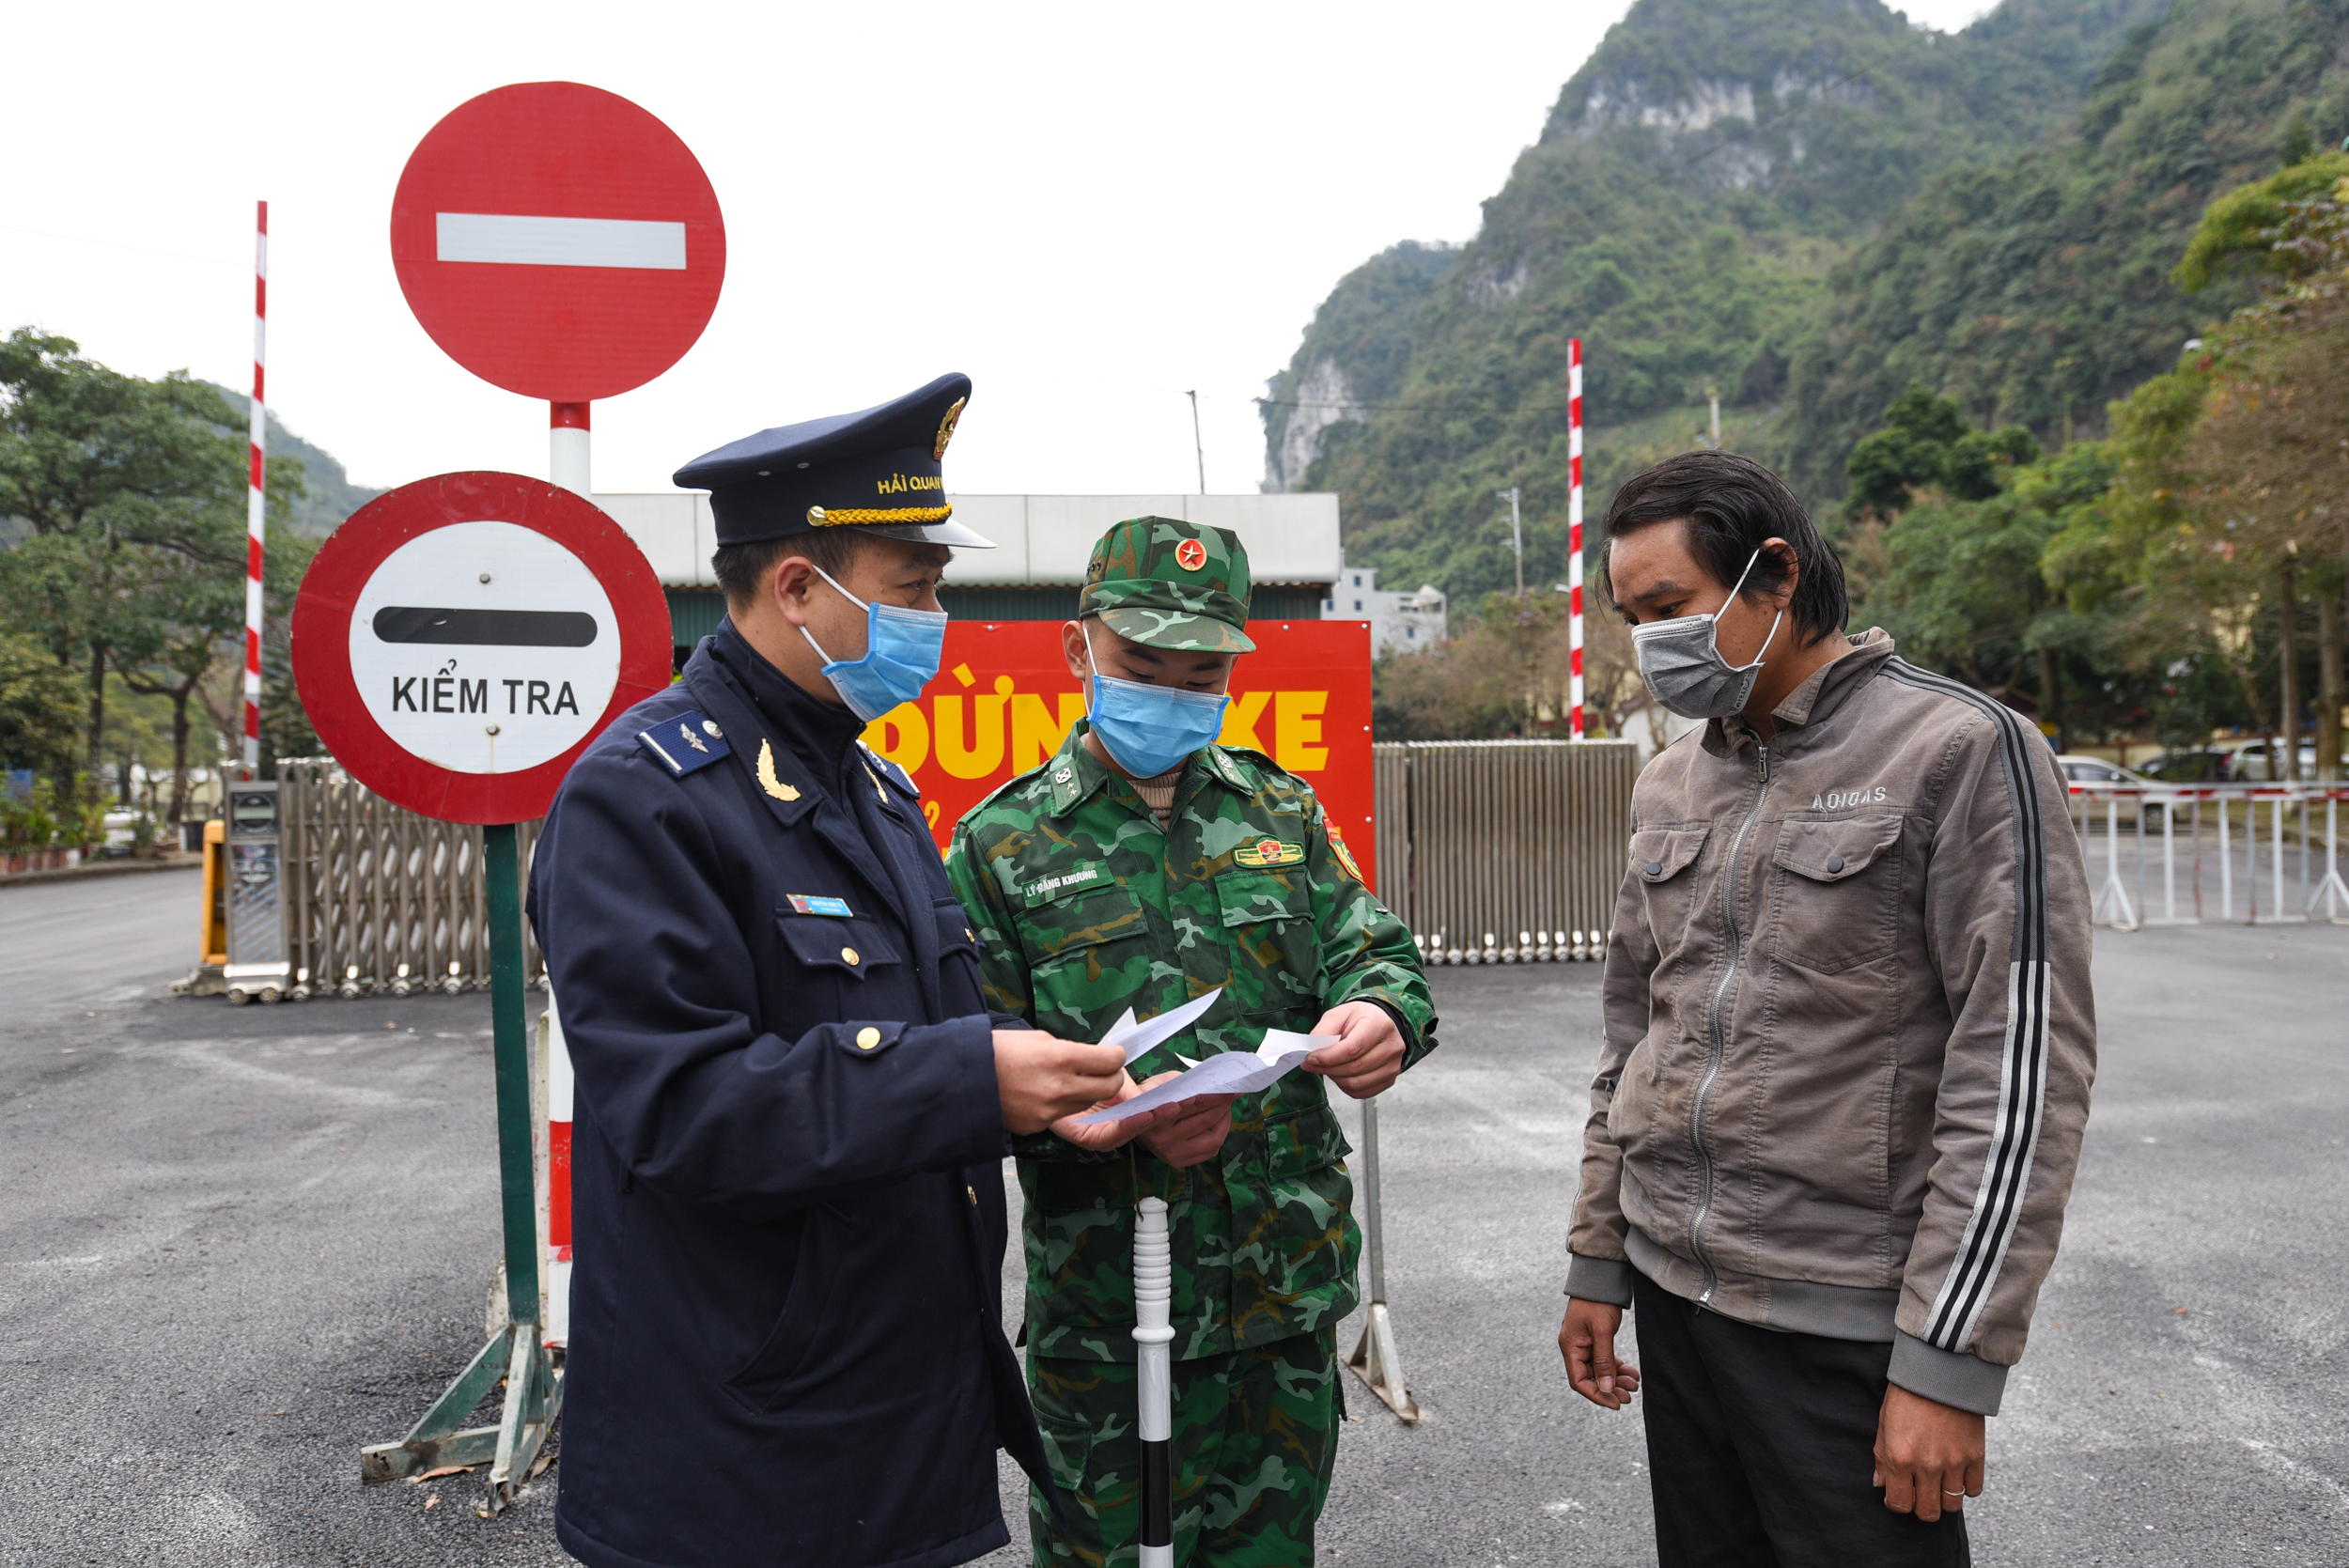 Bộ đội Biên phòng và Hải quan Lạng Sơn kiểm tra người và phương tiện ra vào khu vực cửa khẩu Tân Thanh. Ảnh: Tùng Đinh.